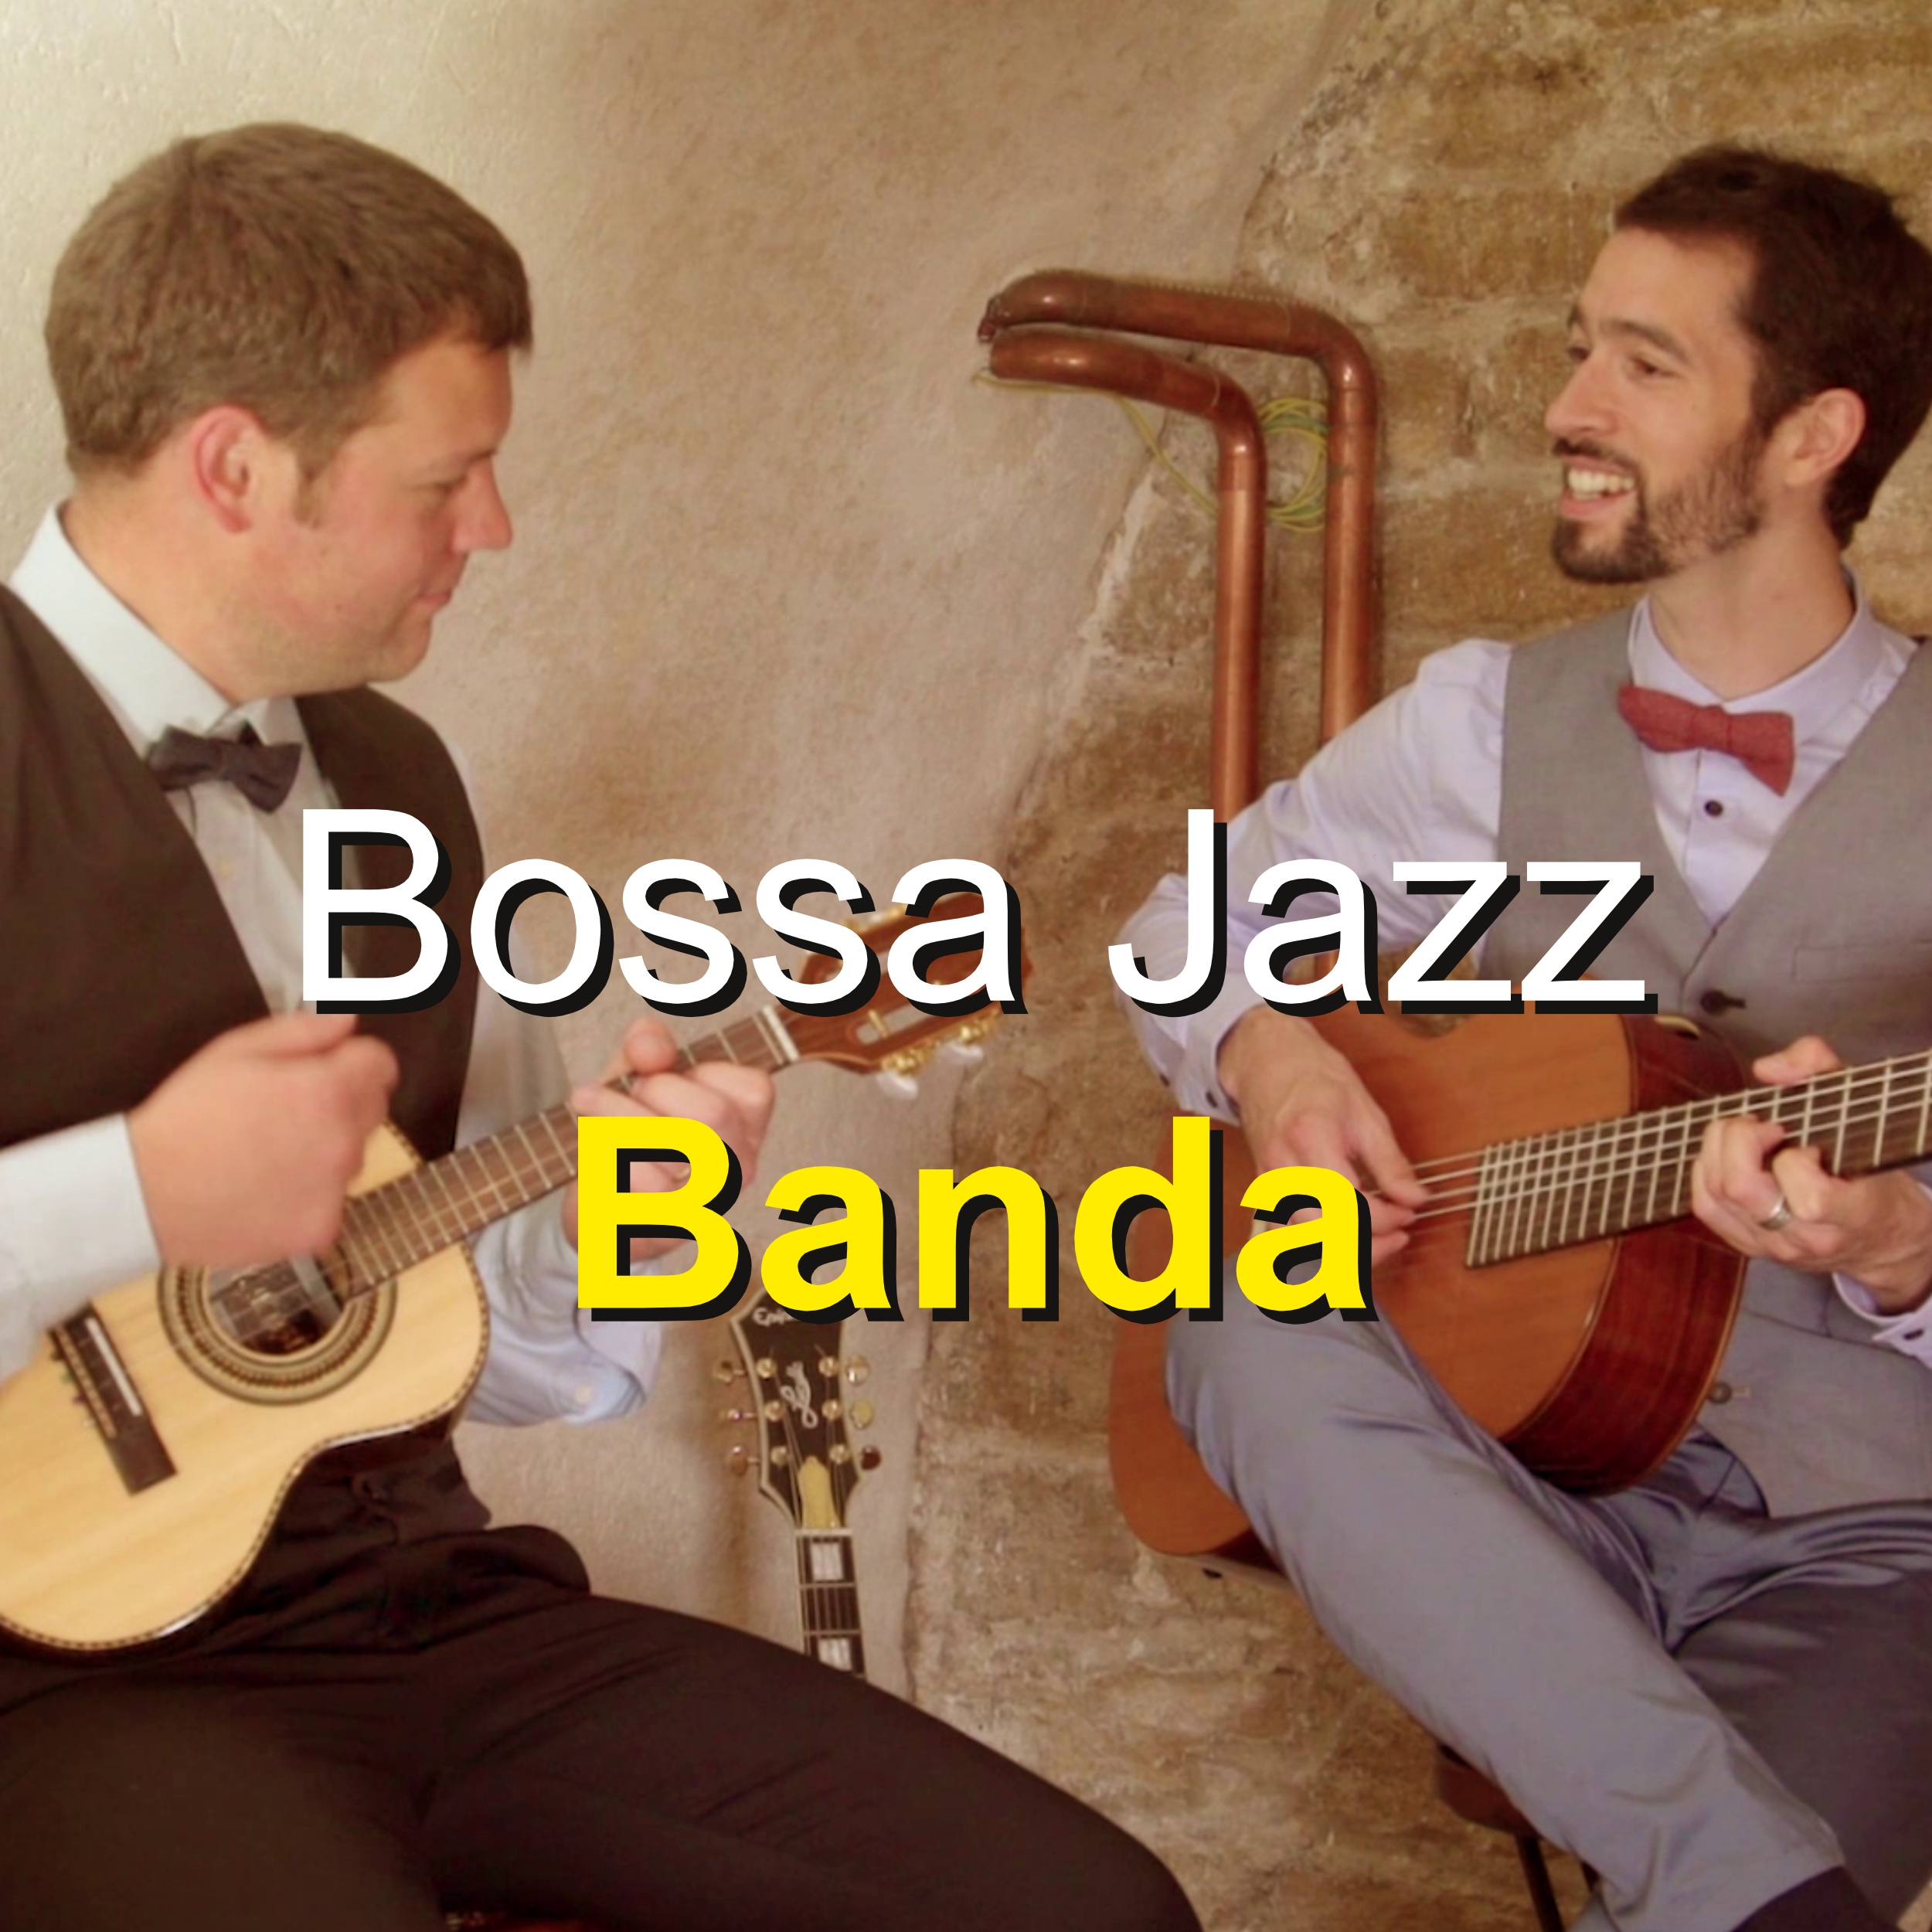 Chanteur Bossa Nova, Jazz et chanson française